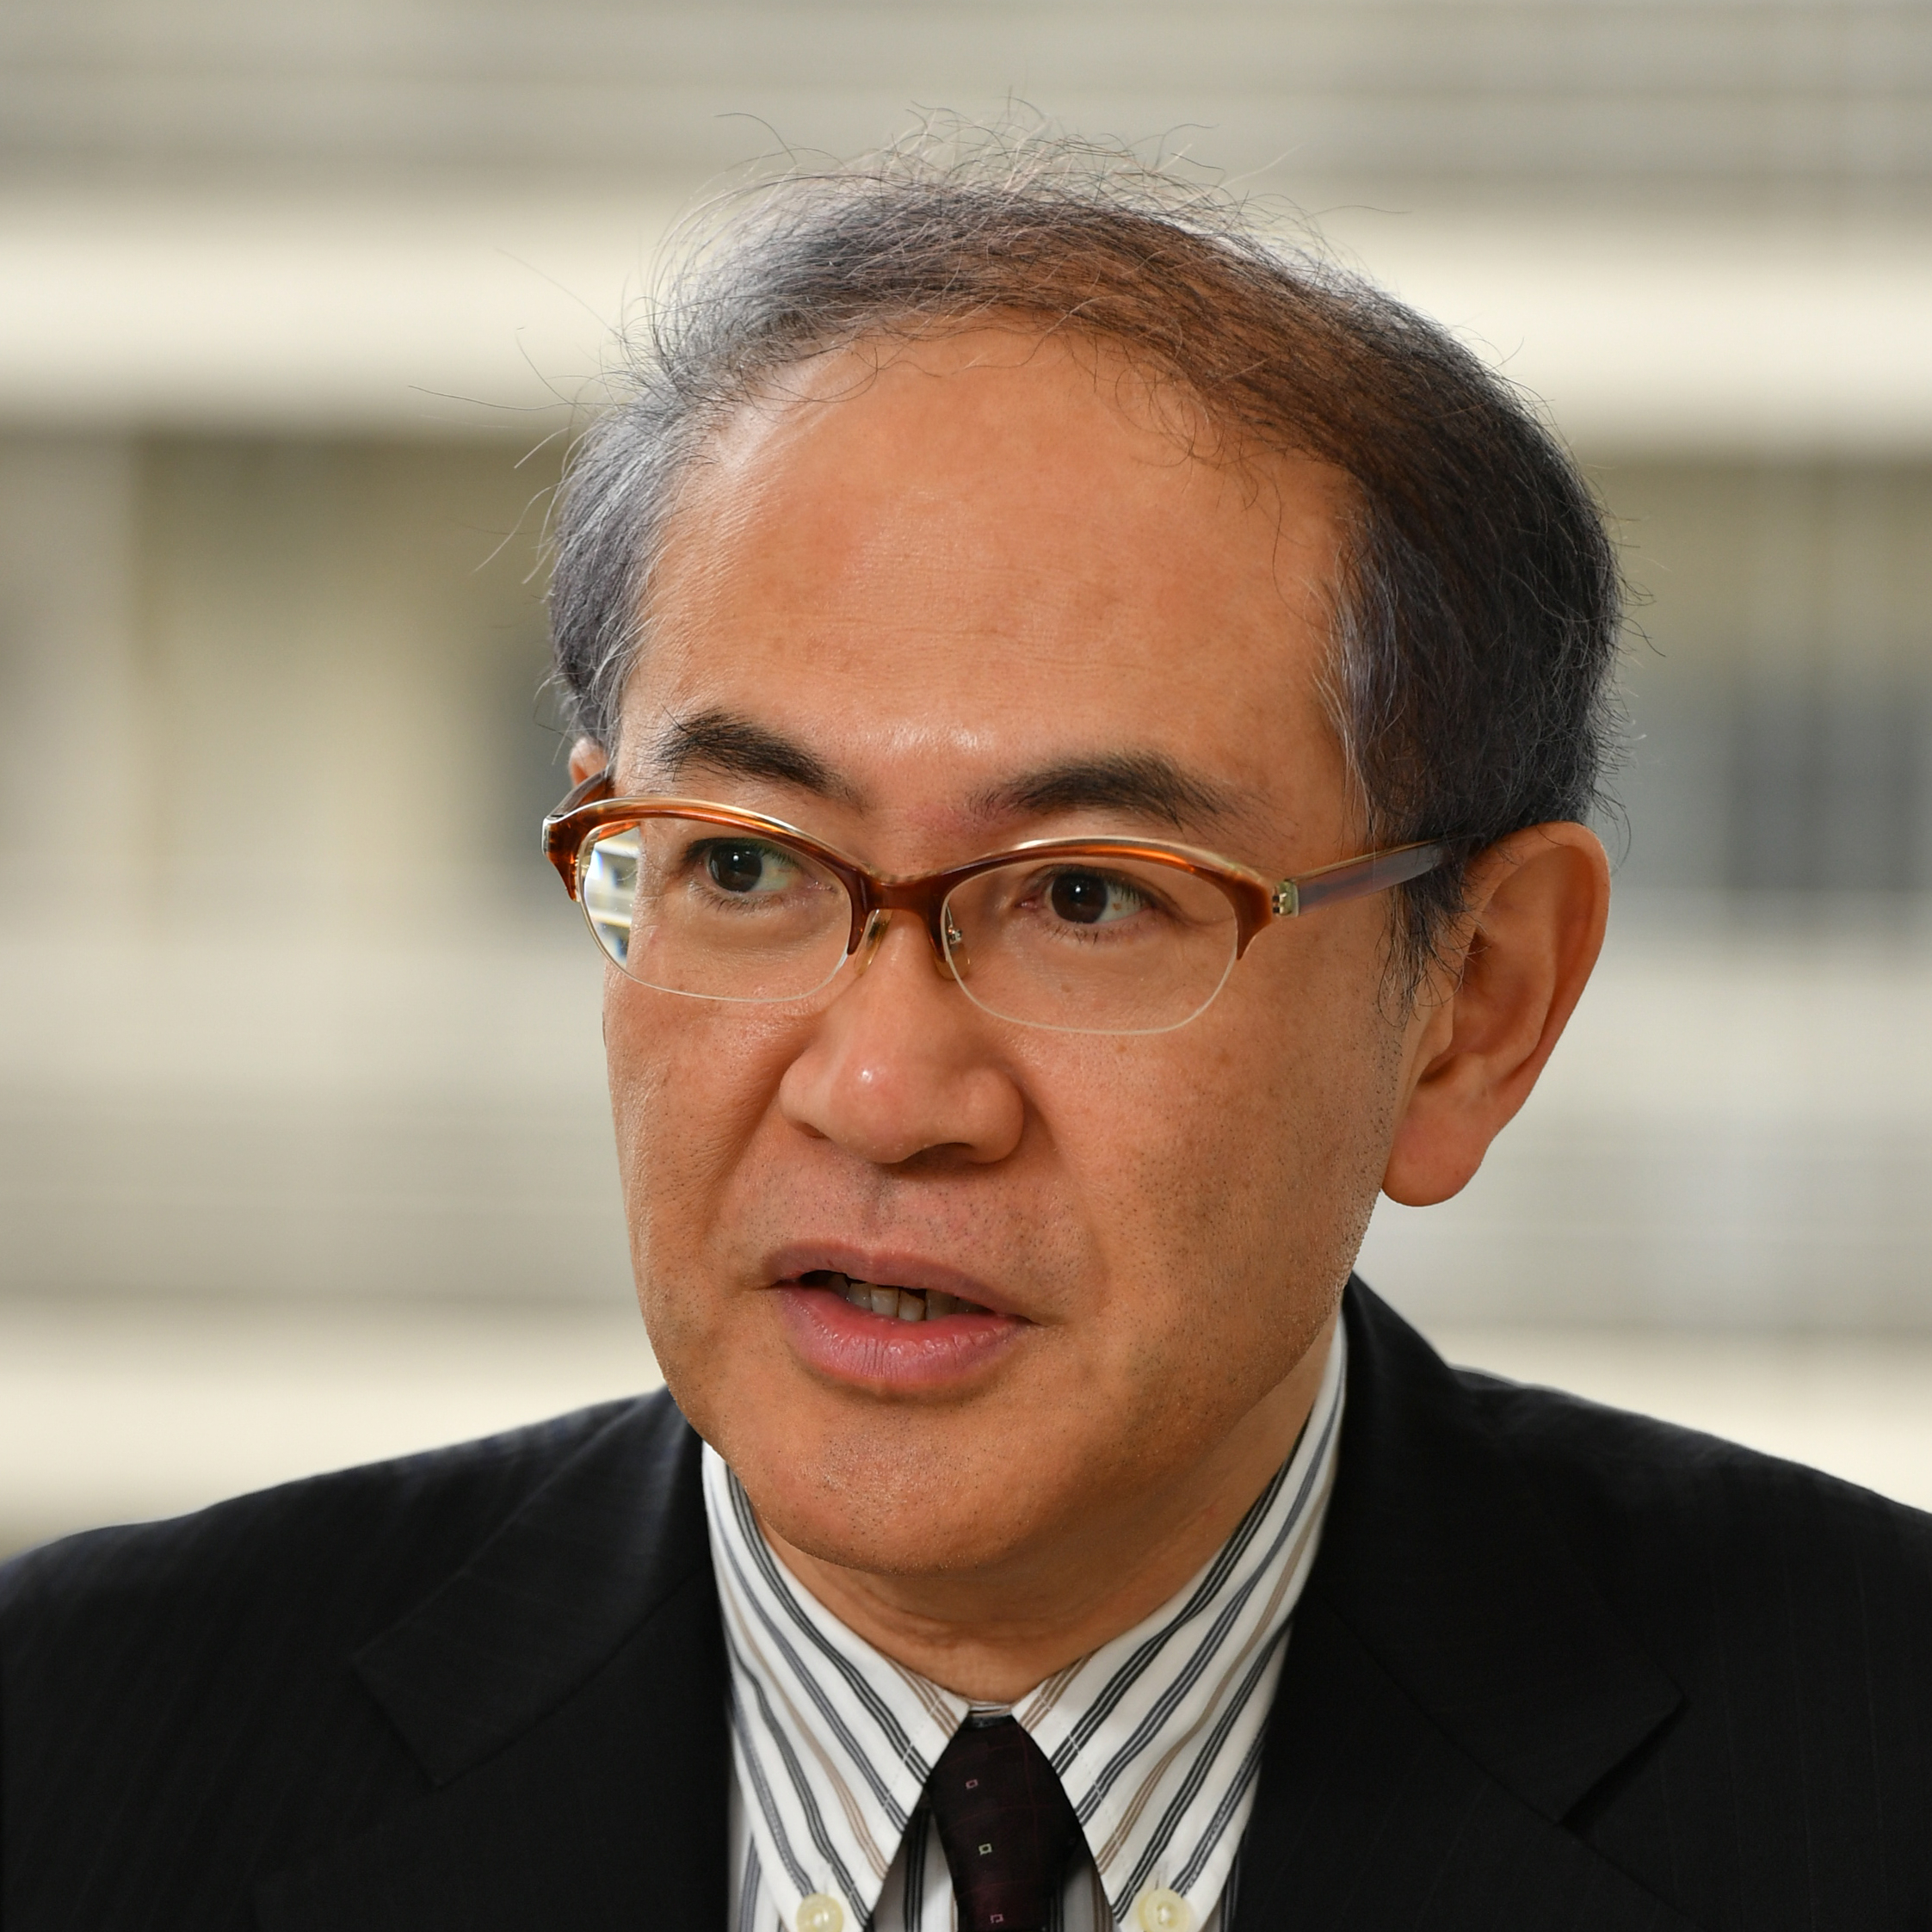 Dr. Katsuya Yamori